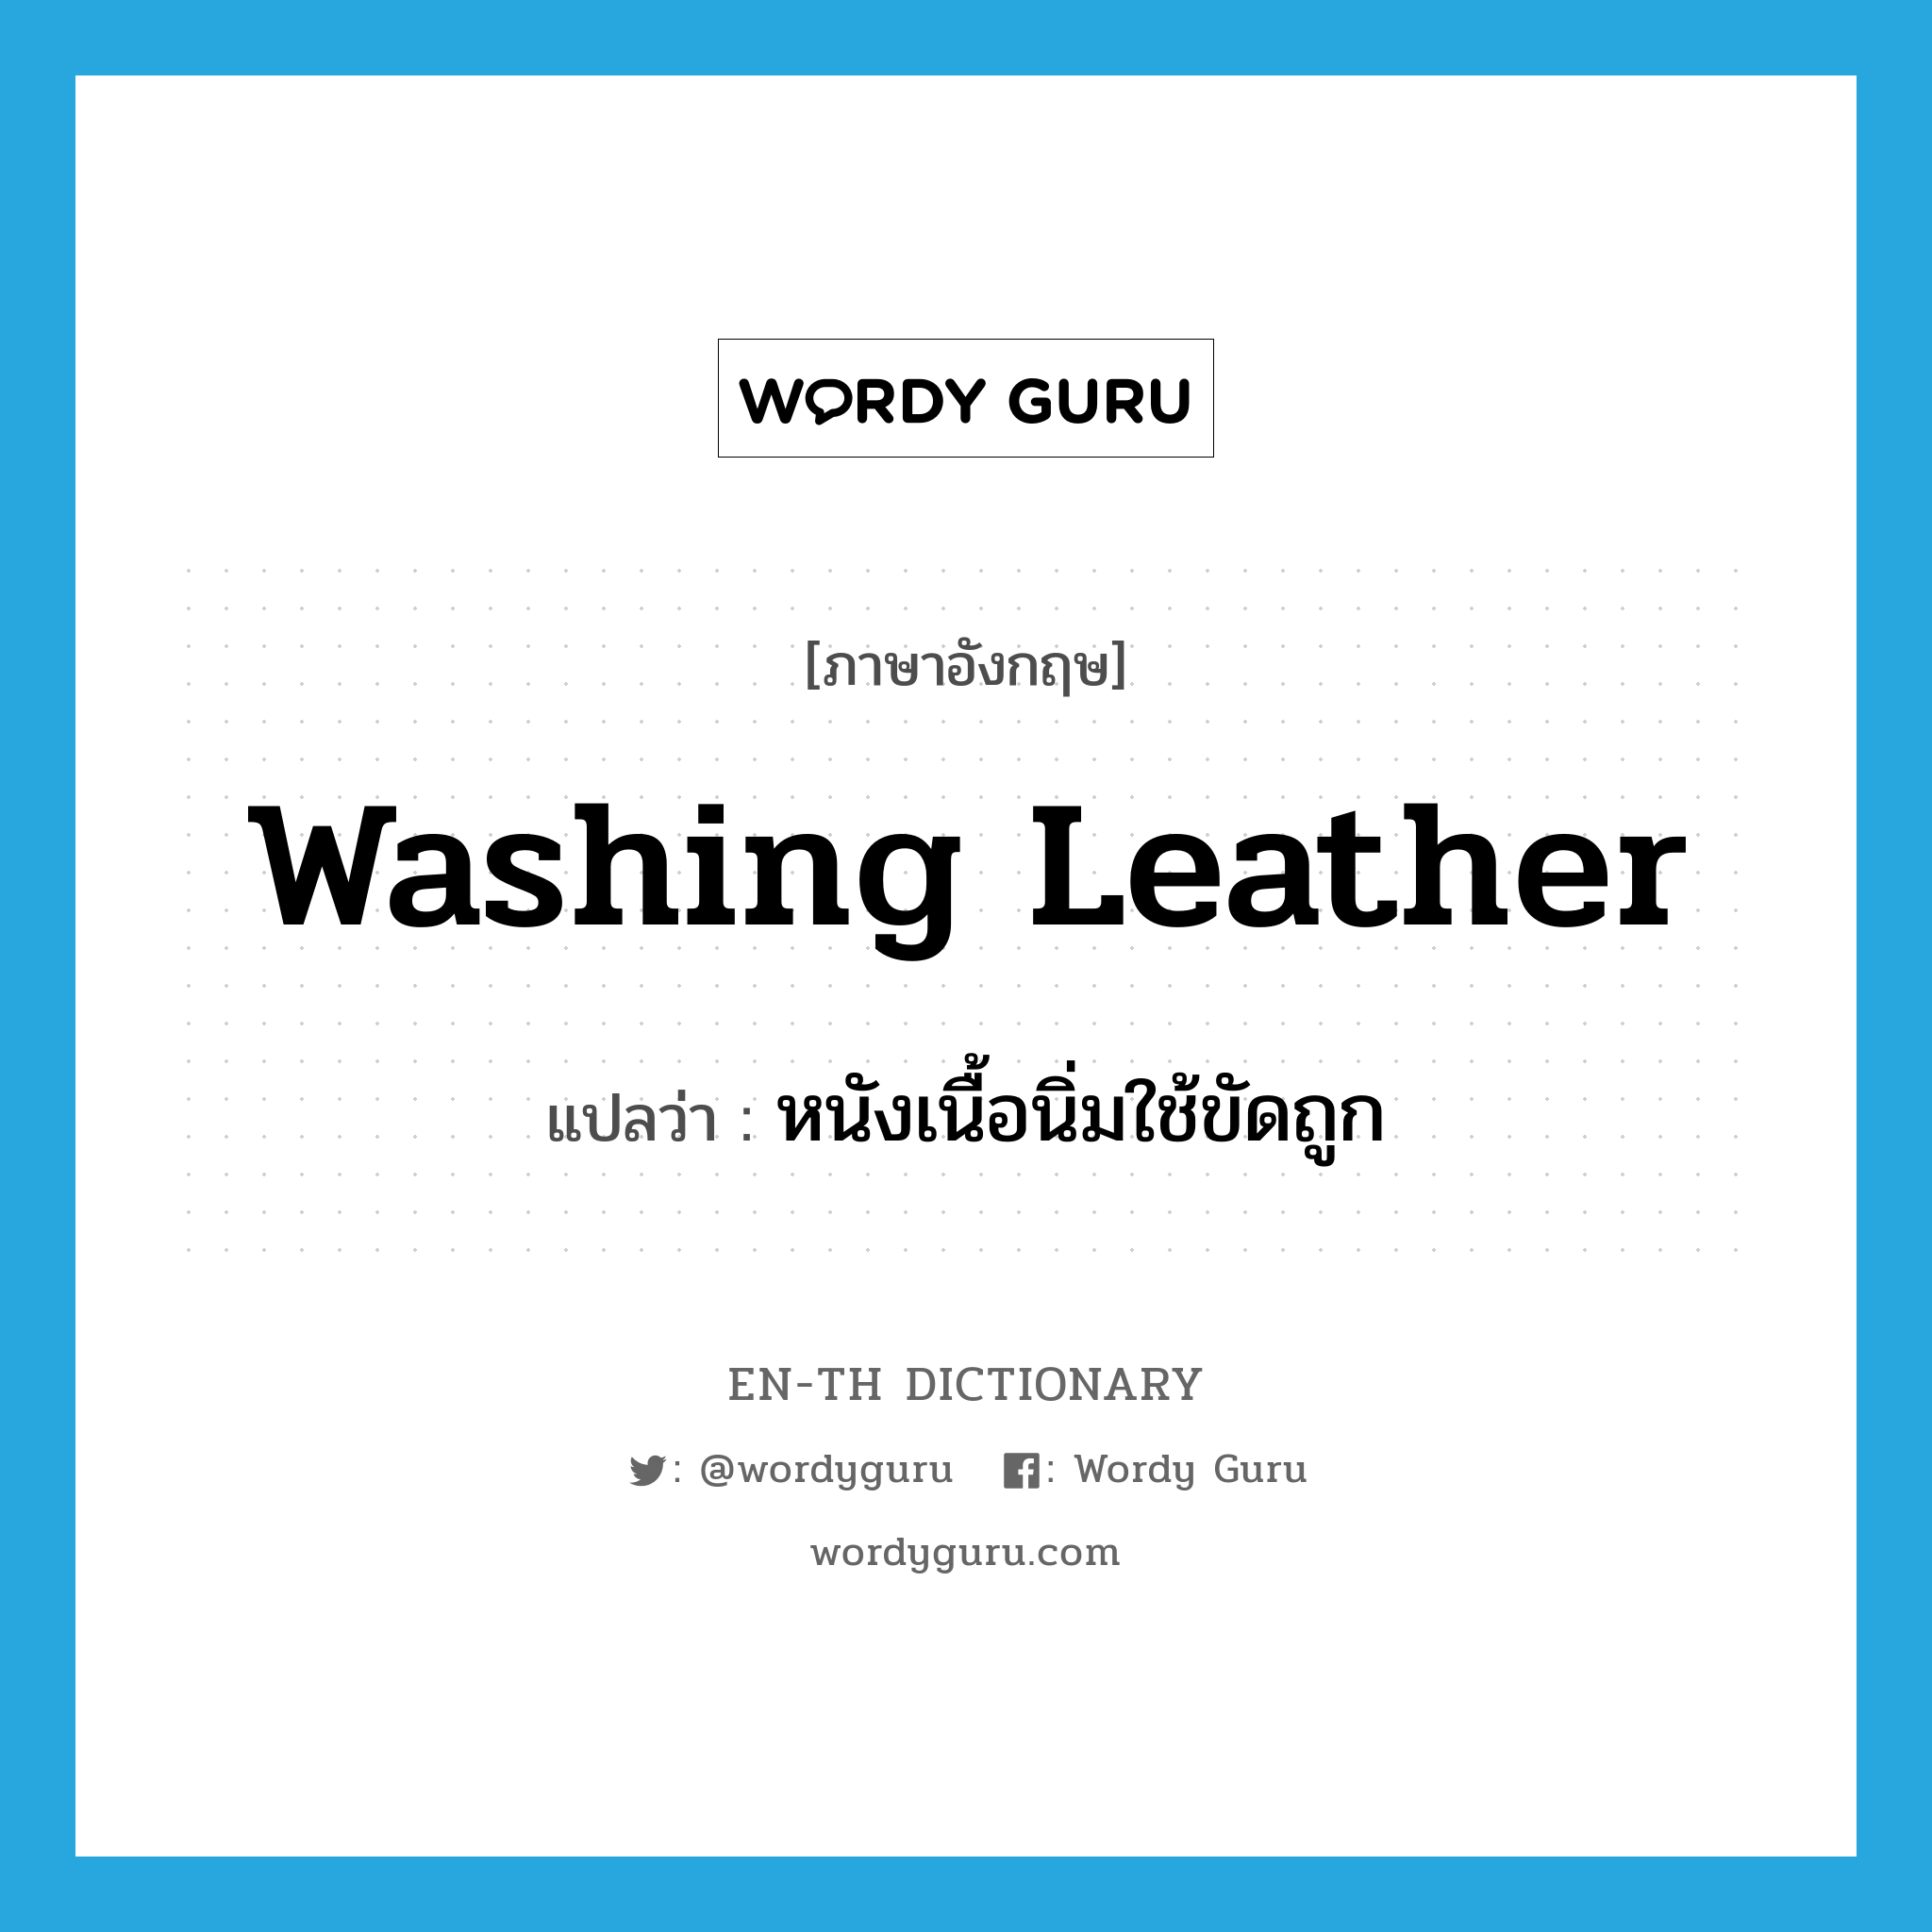 washing leather แปลว่า?, คำศัพท์ภาษาอังกฤษ washing leather แปลว่า หนังเนื้อนิ่มใช้ขัดถูก ประเภท N หมวด N